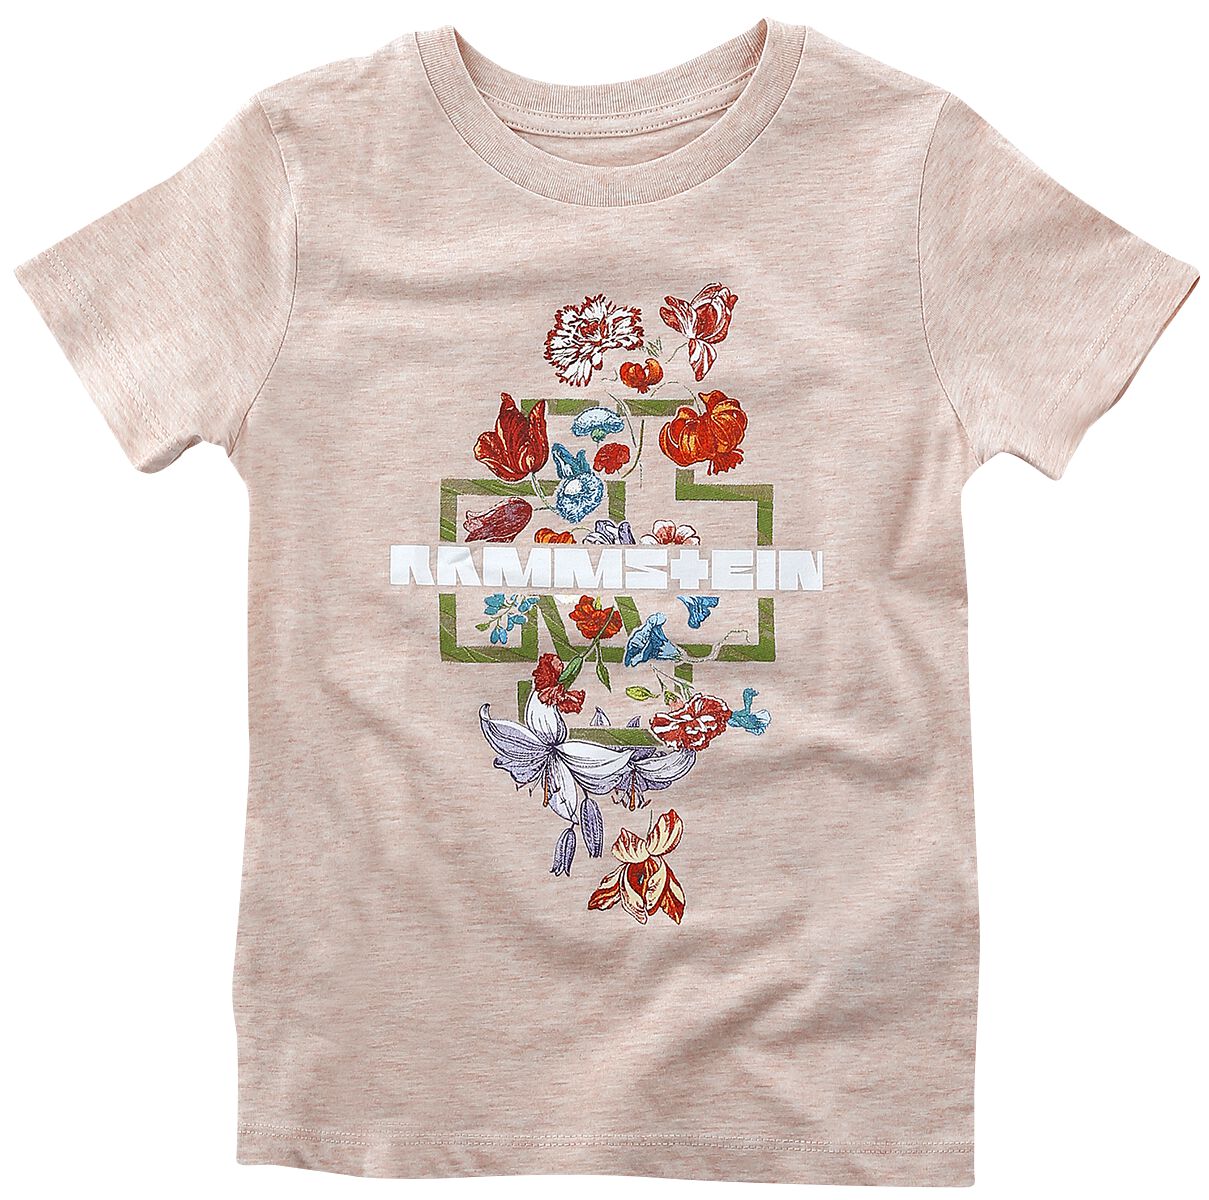 T-shirt de Rammstein - Kids - Blumen - 98/104 à 134/146 - pour filles - rose clair